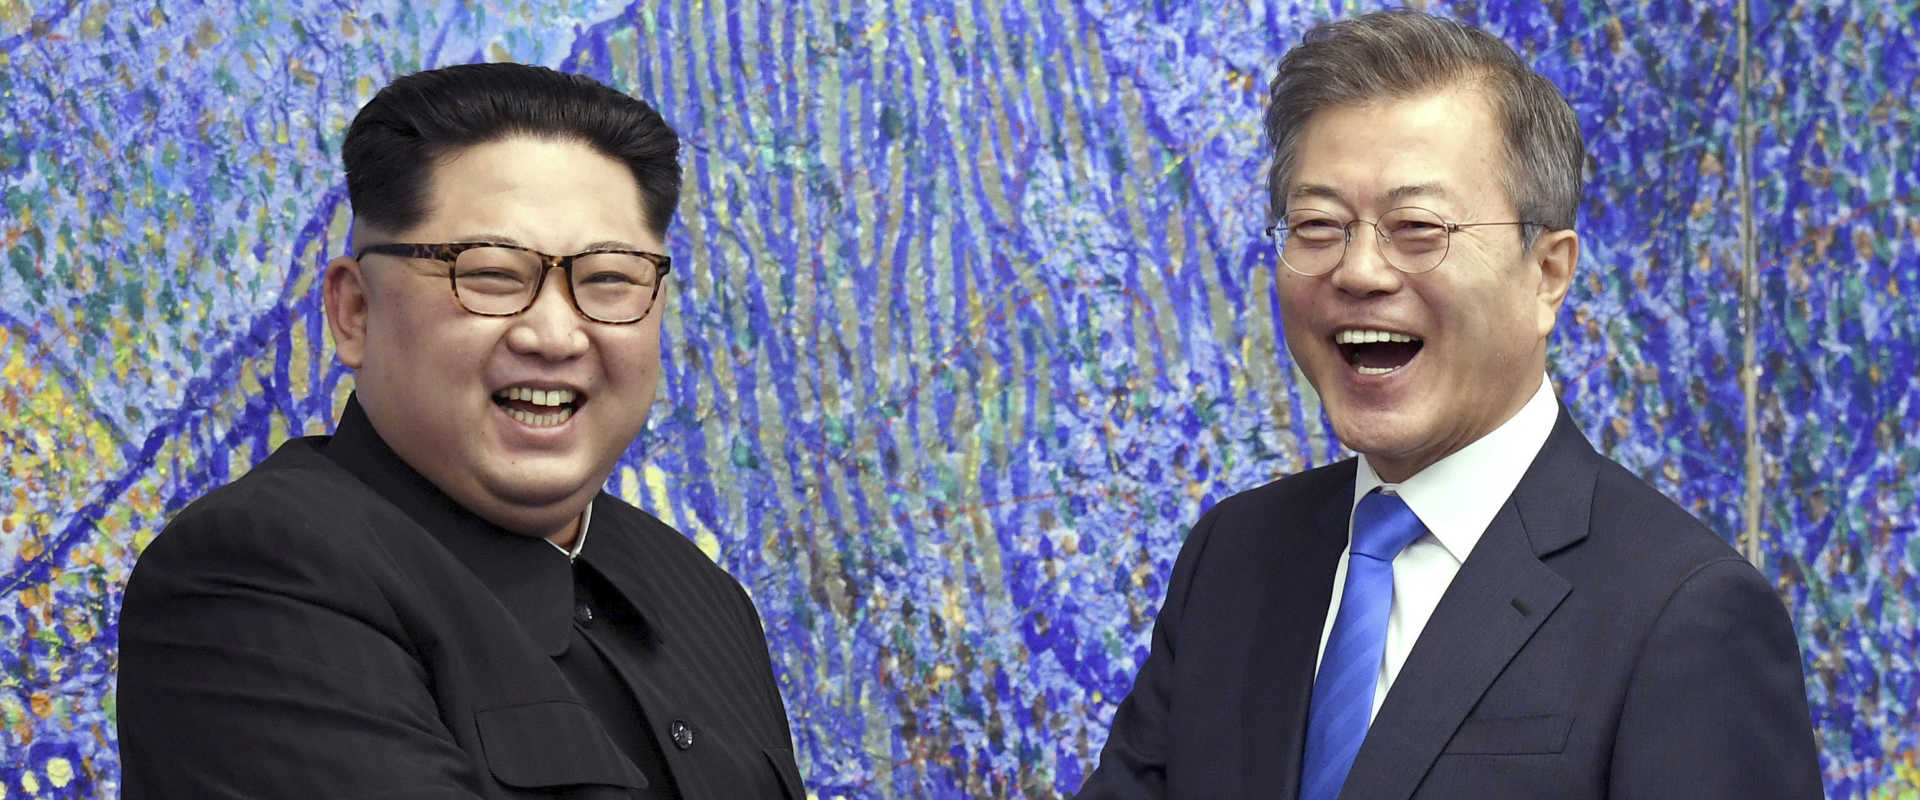 מנהיגי קוריאה הדרומית והצפונית